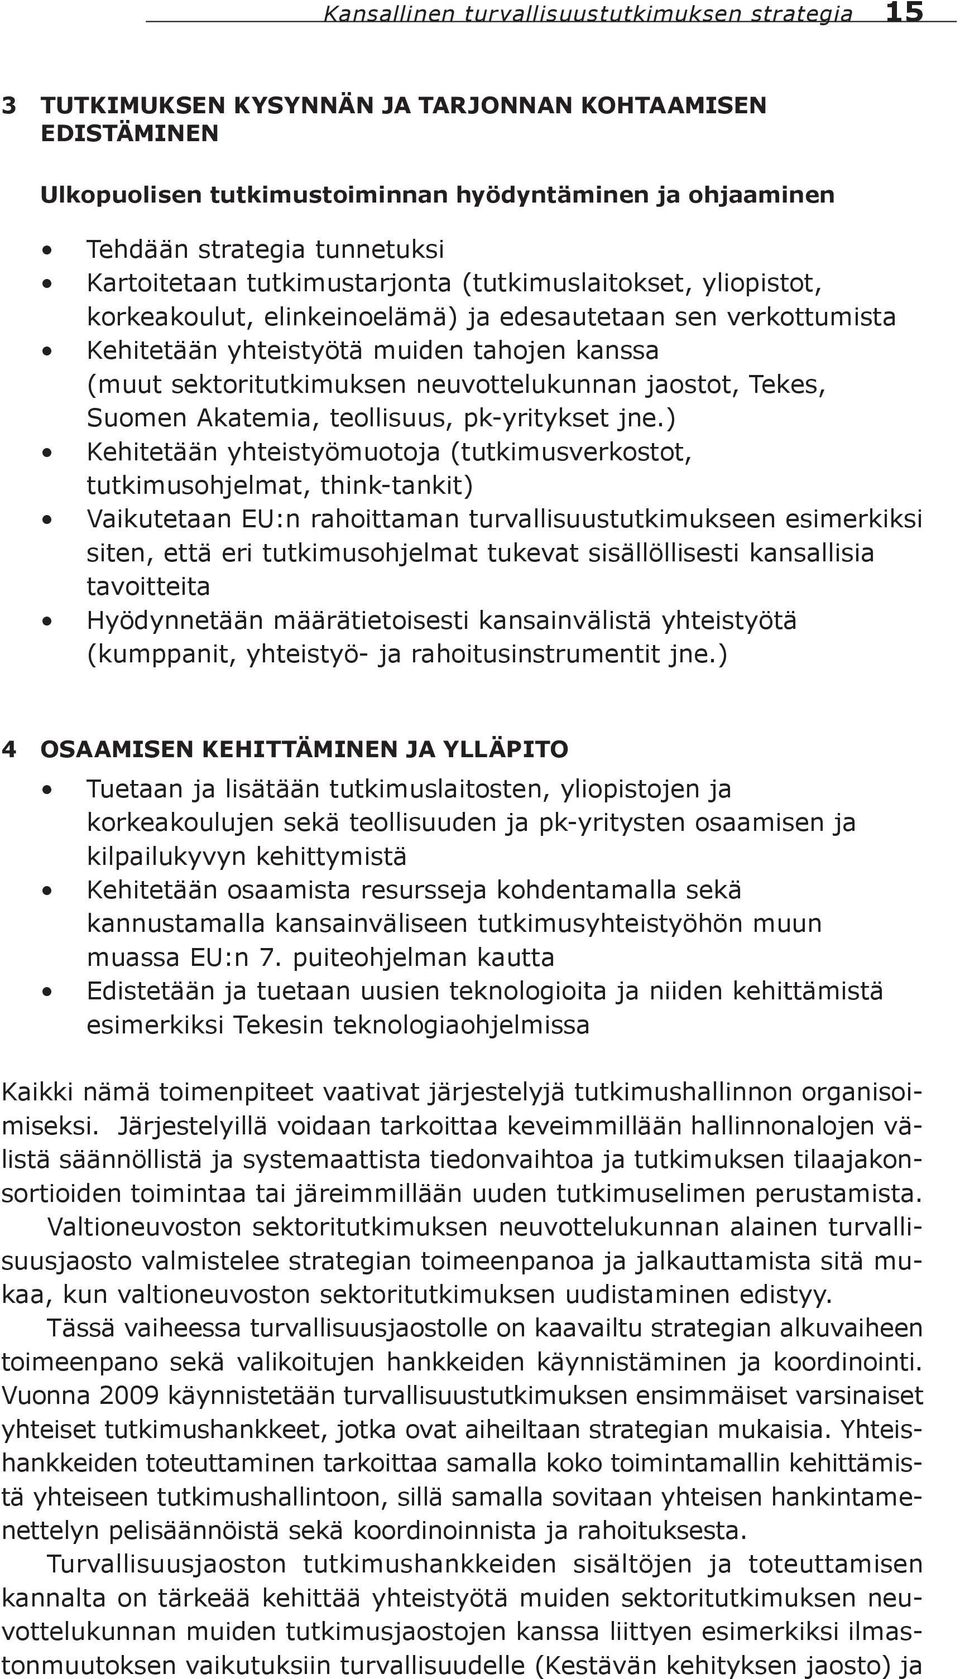 neuvottelukunnan jaostot, Tekes, Suomen Akatemia, teollisuus, pk-yritykset jne.